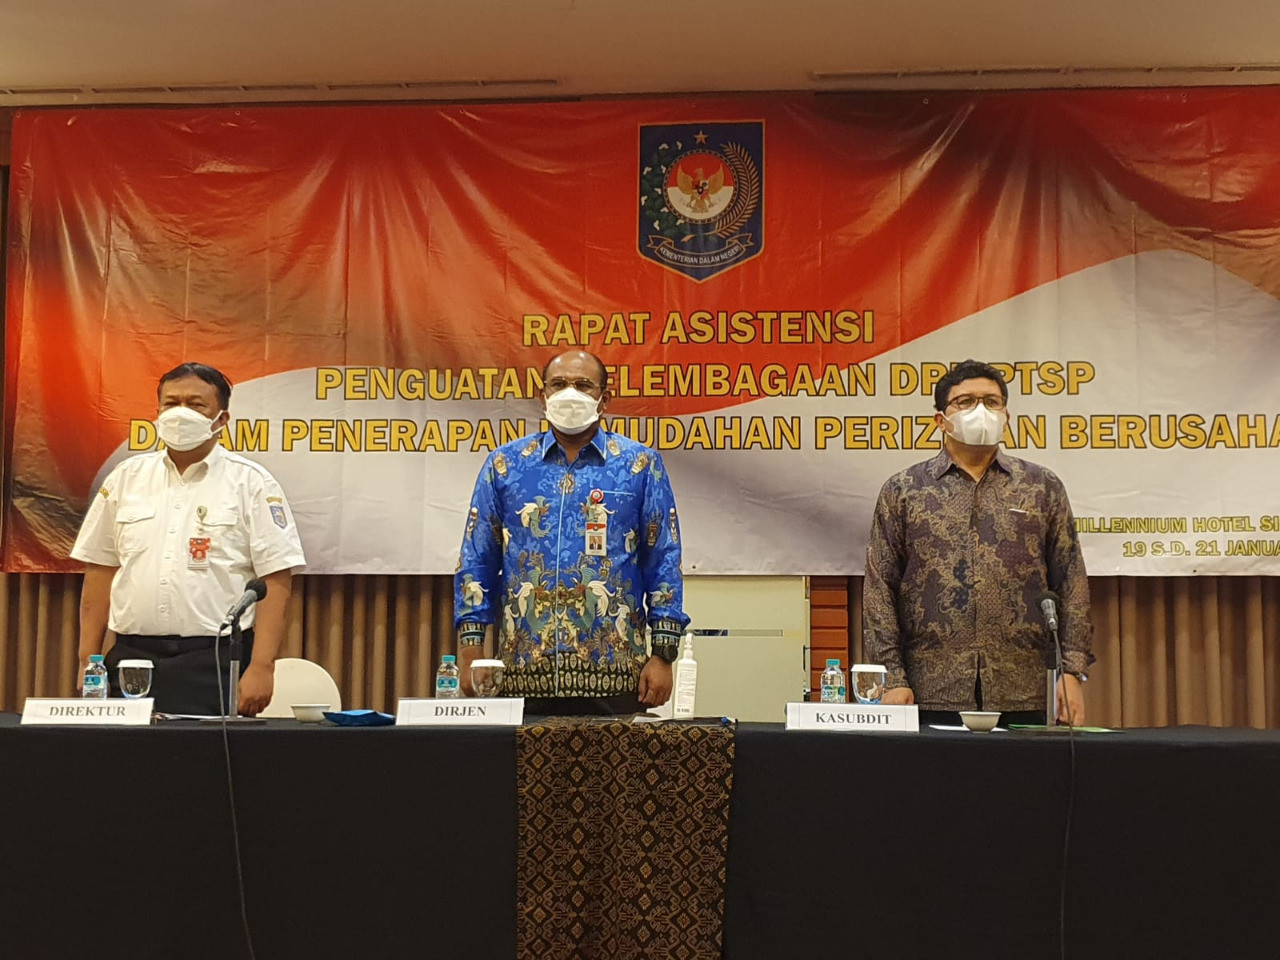 Rapat Asitensi Penguatan Kelembagaan DPMPTSP Dalam Penerapan Kemudahan Perizinan Berusaha Tahun 2022